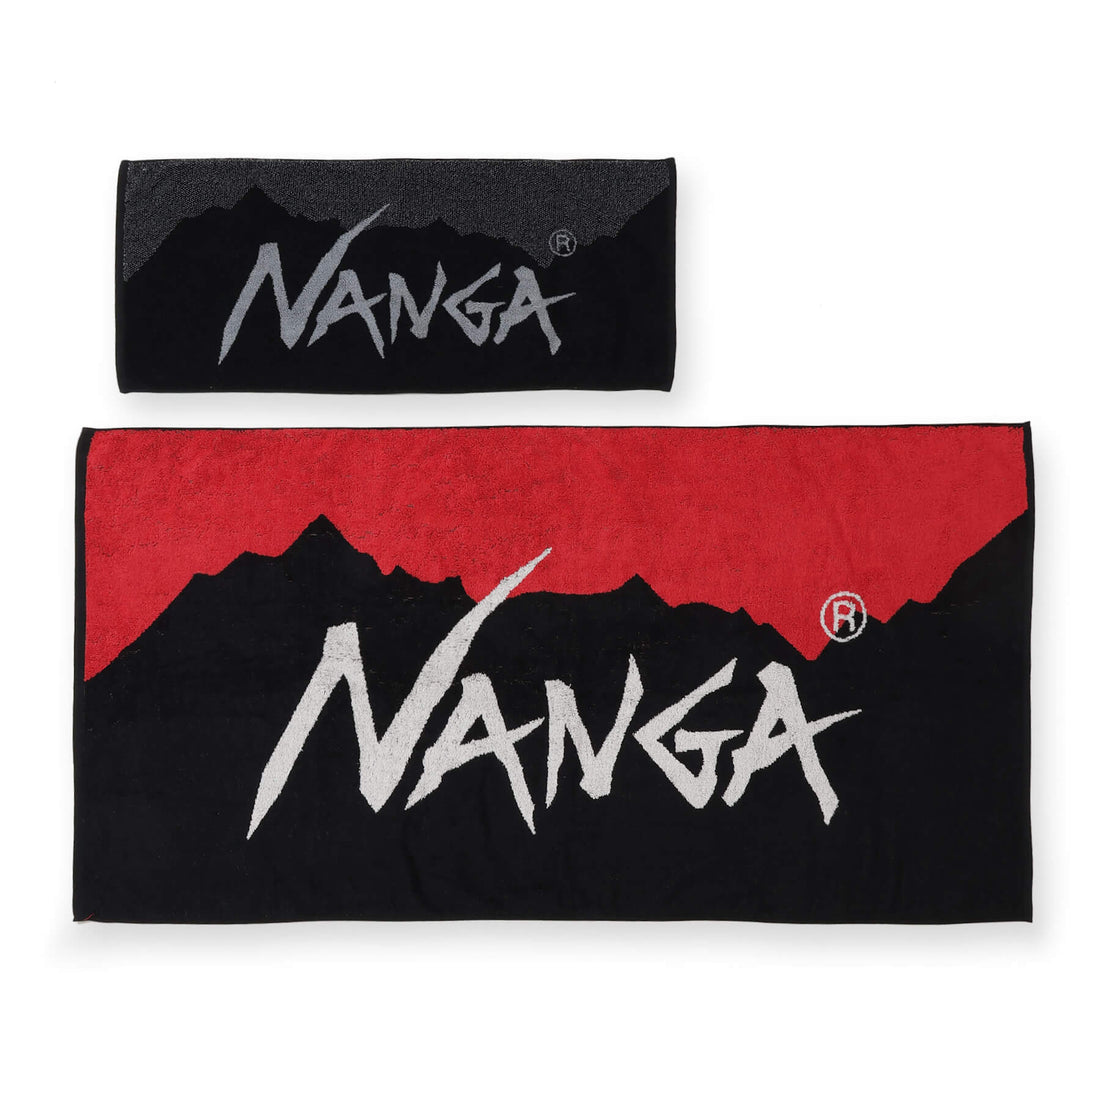 NANGA LOGO FACE TOWEL / ナンガロゴフェイスタオル (6779245822126)